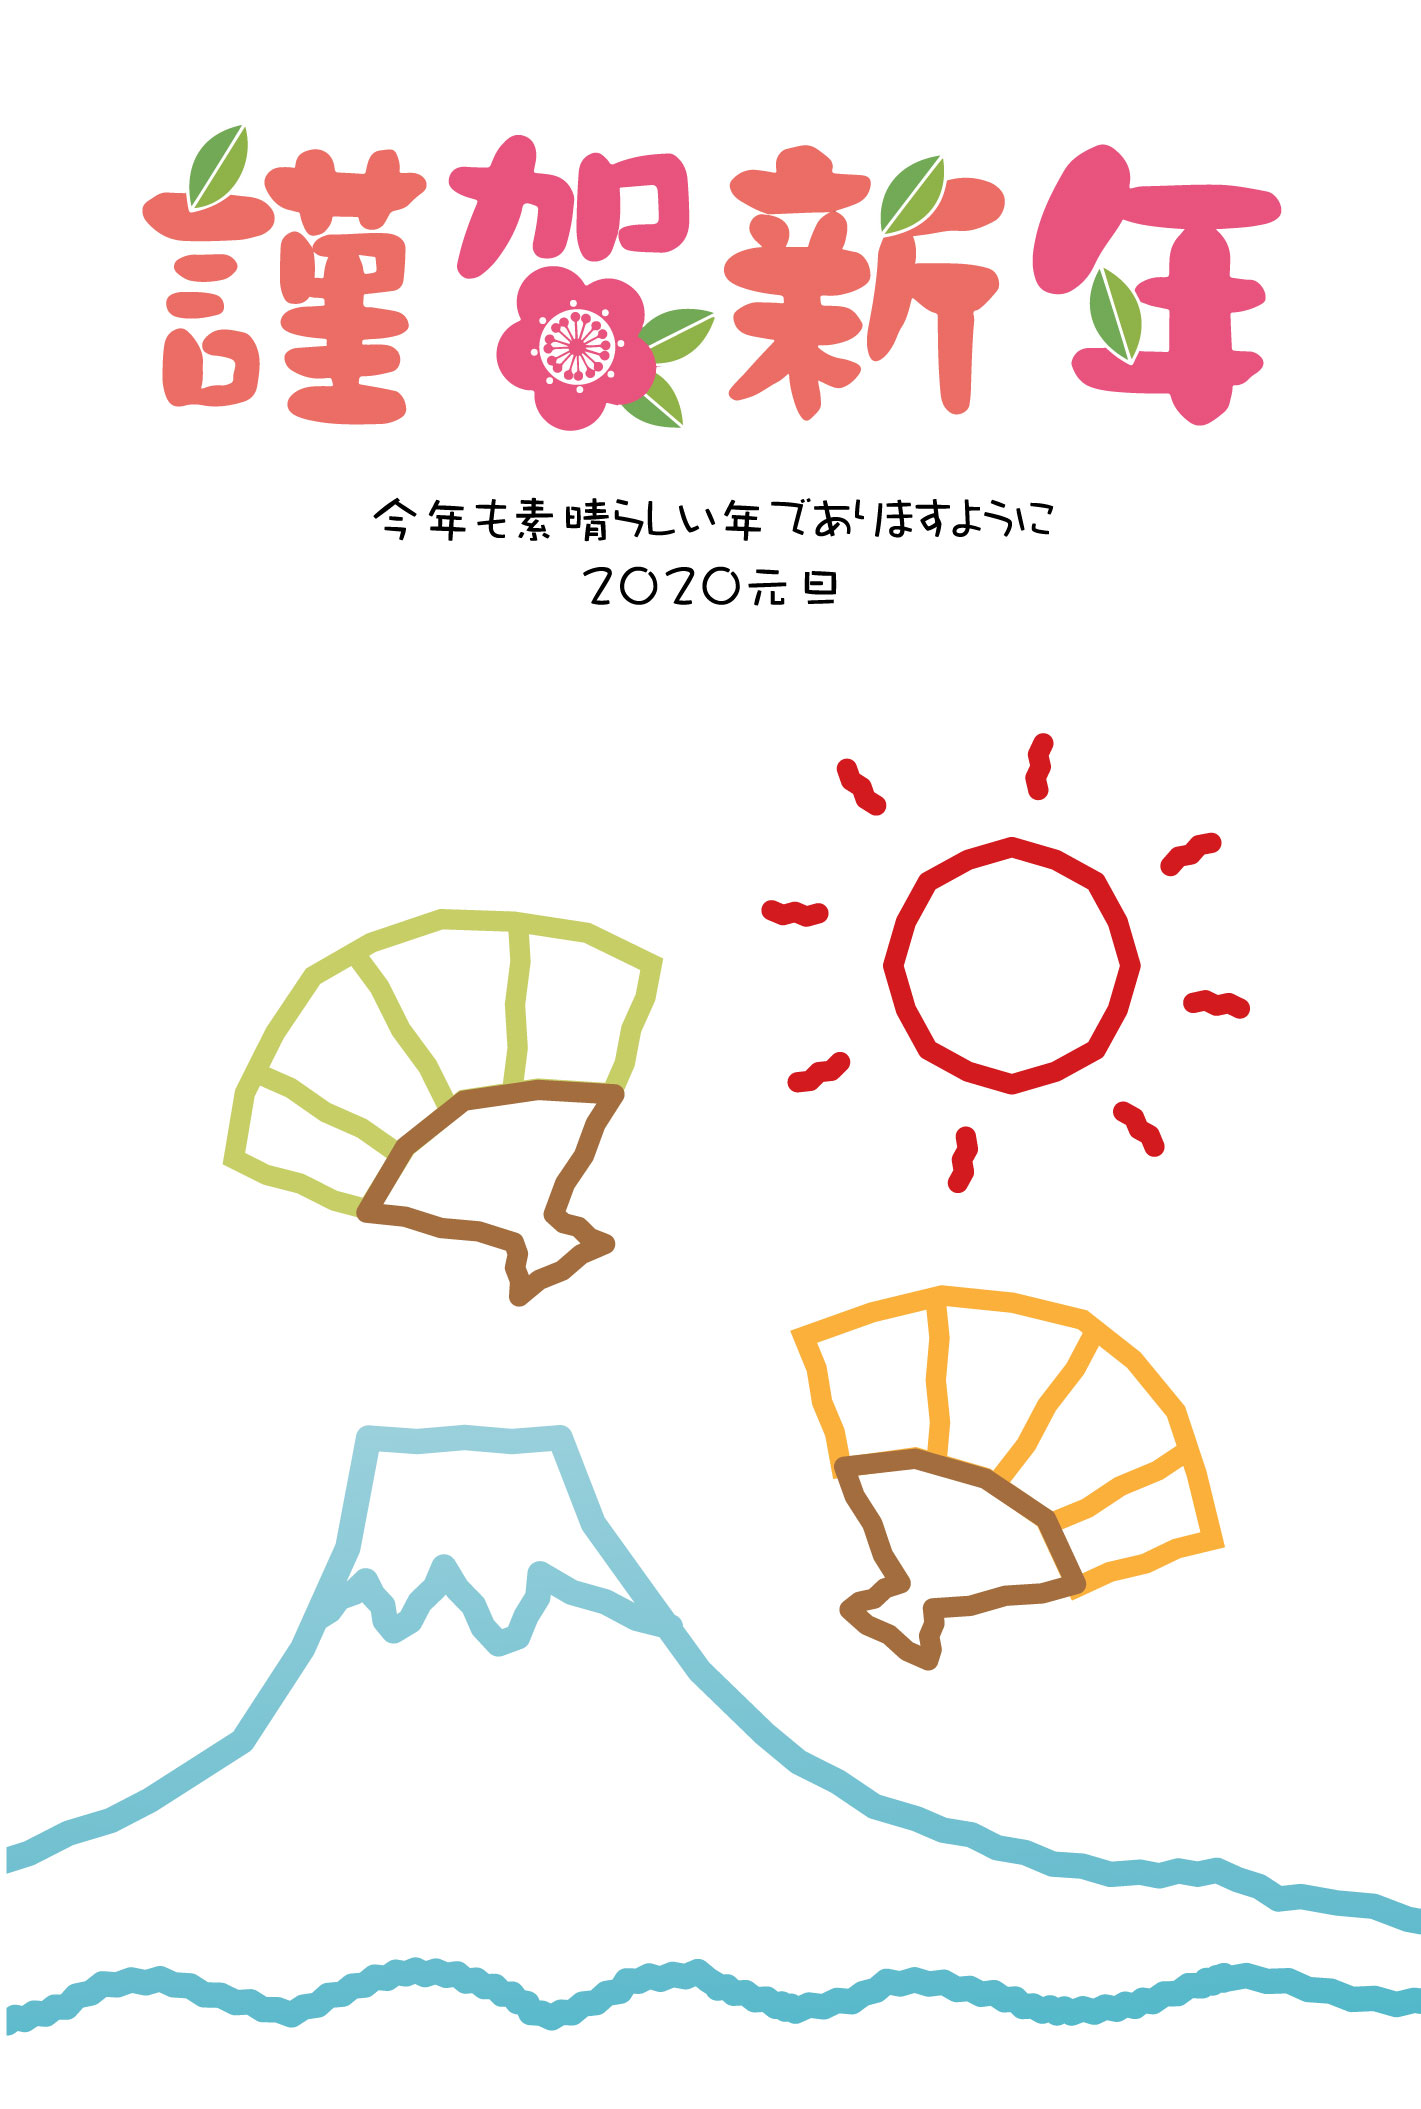 「謹賀新年」富士山と初日の出のお絵描きの無料年賀状イラスト素材です-挨拶文あり